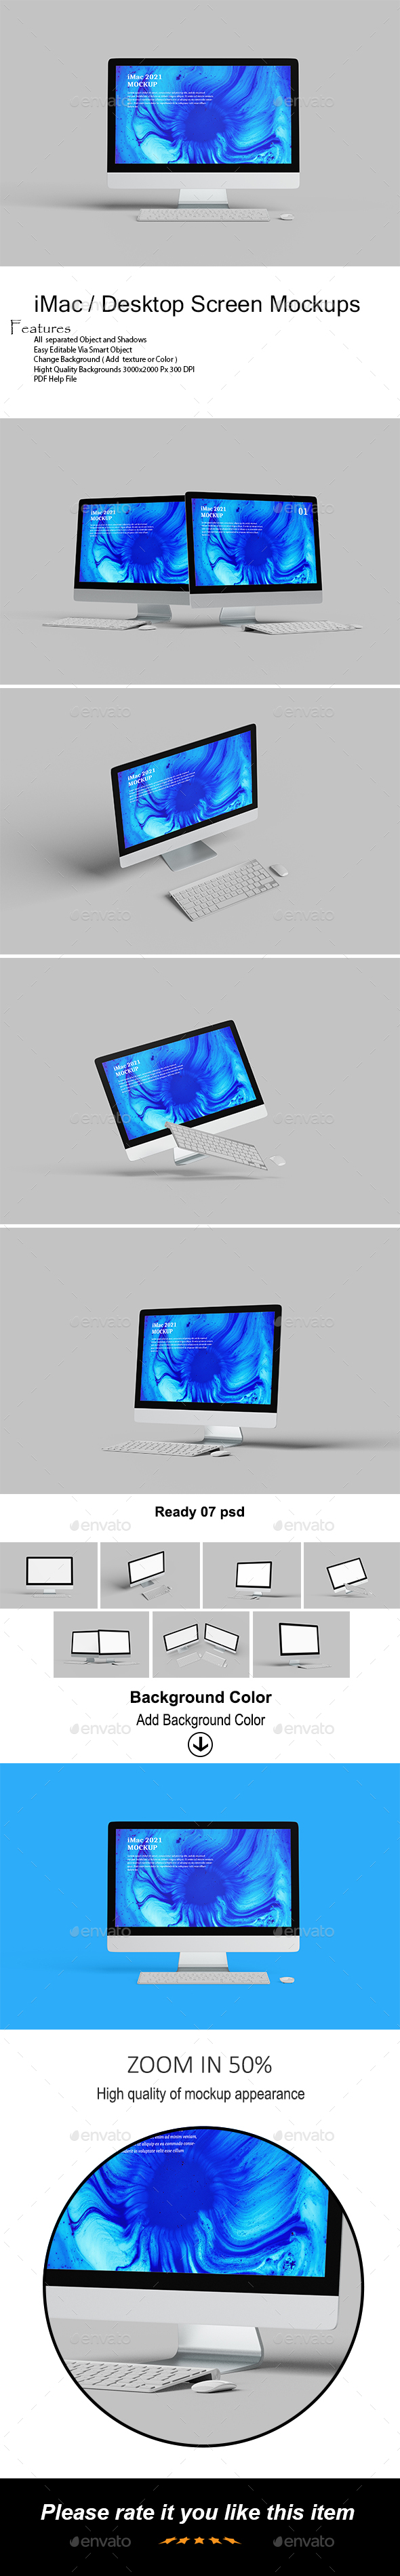 [DOWNLOAD]iMac / Desktop Screen Mockups